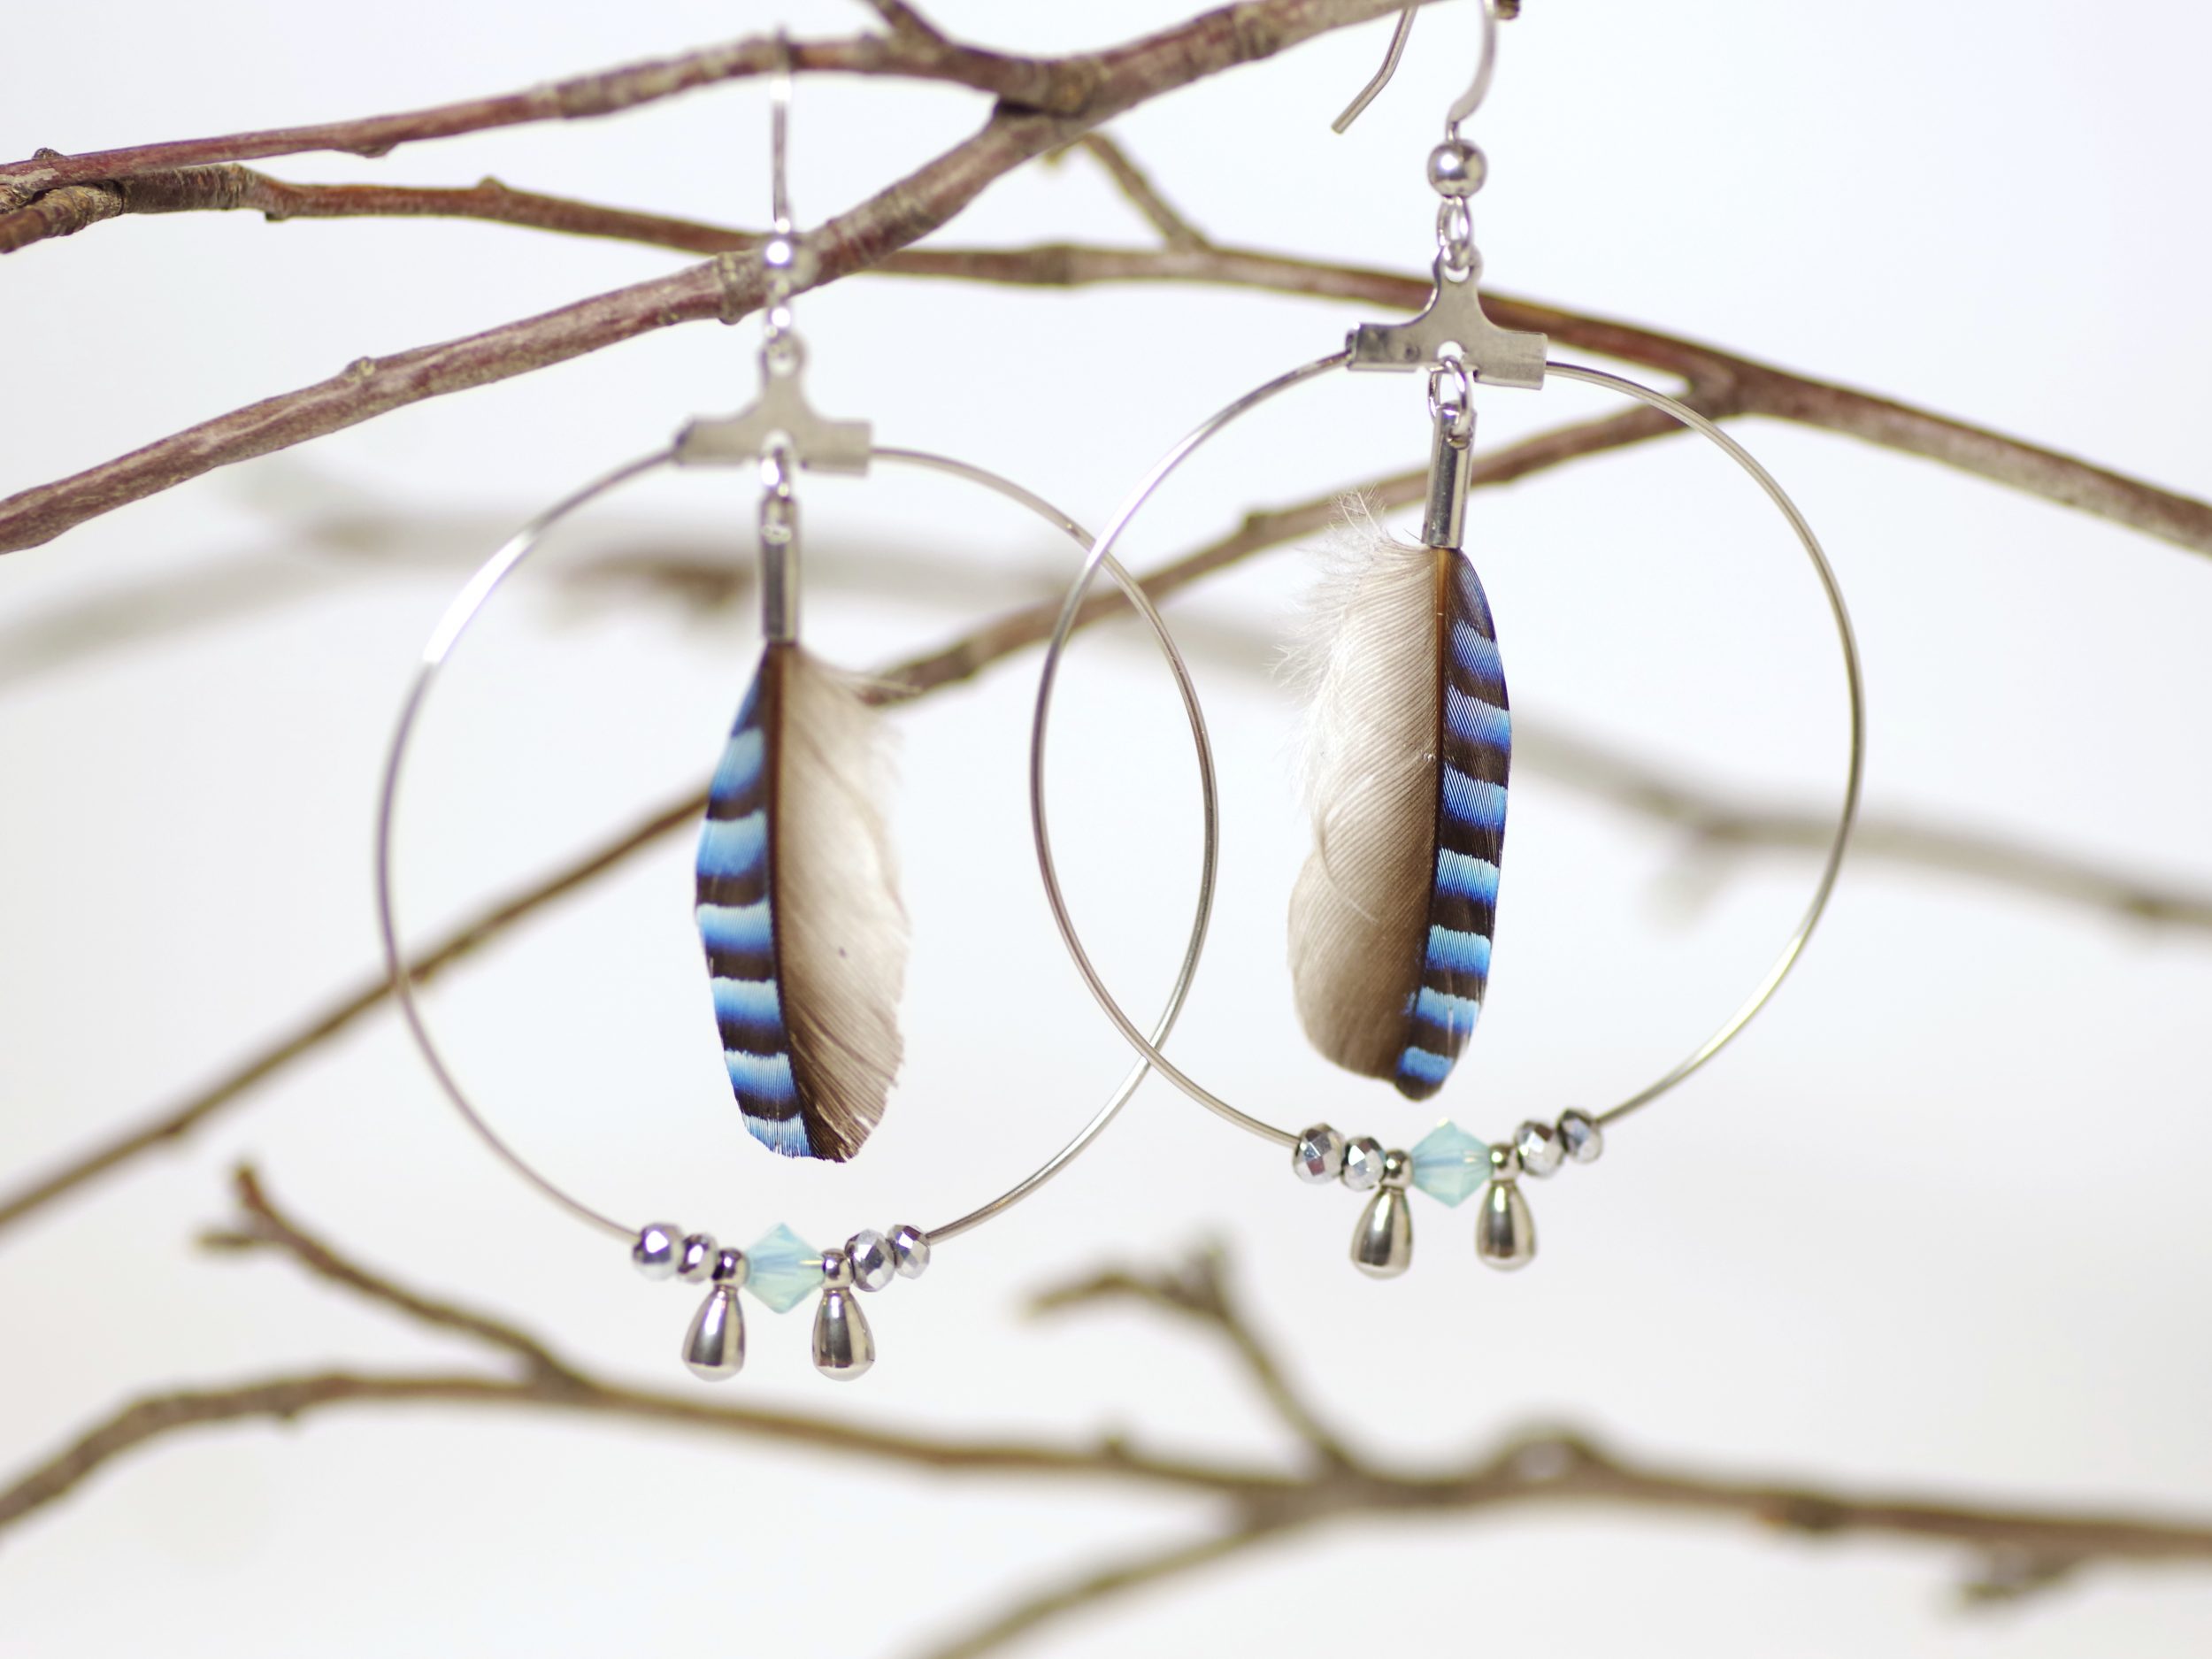 boucles d"oreilles avec grand anneau inox , plume bleue rayée et petites perles bleues et argentées.